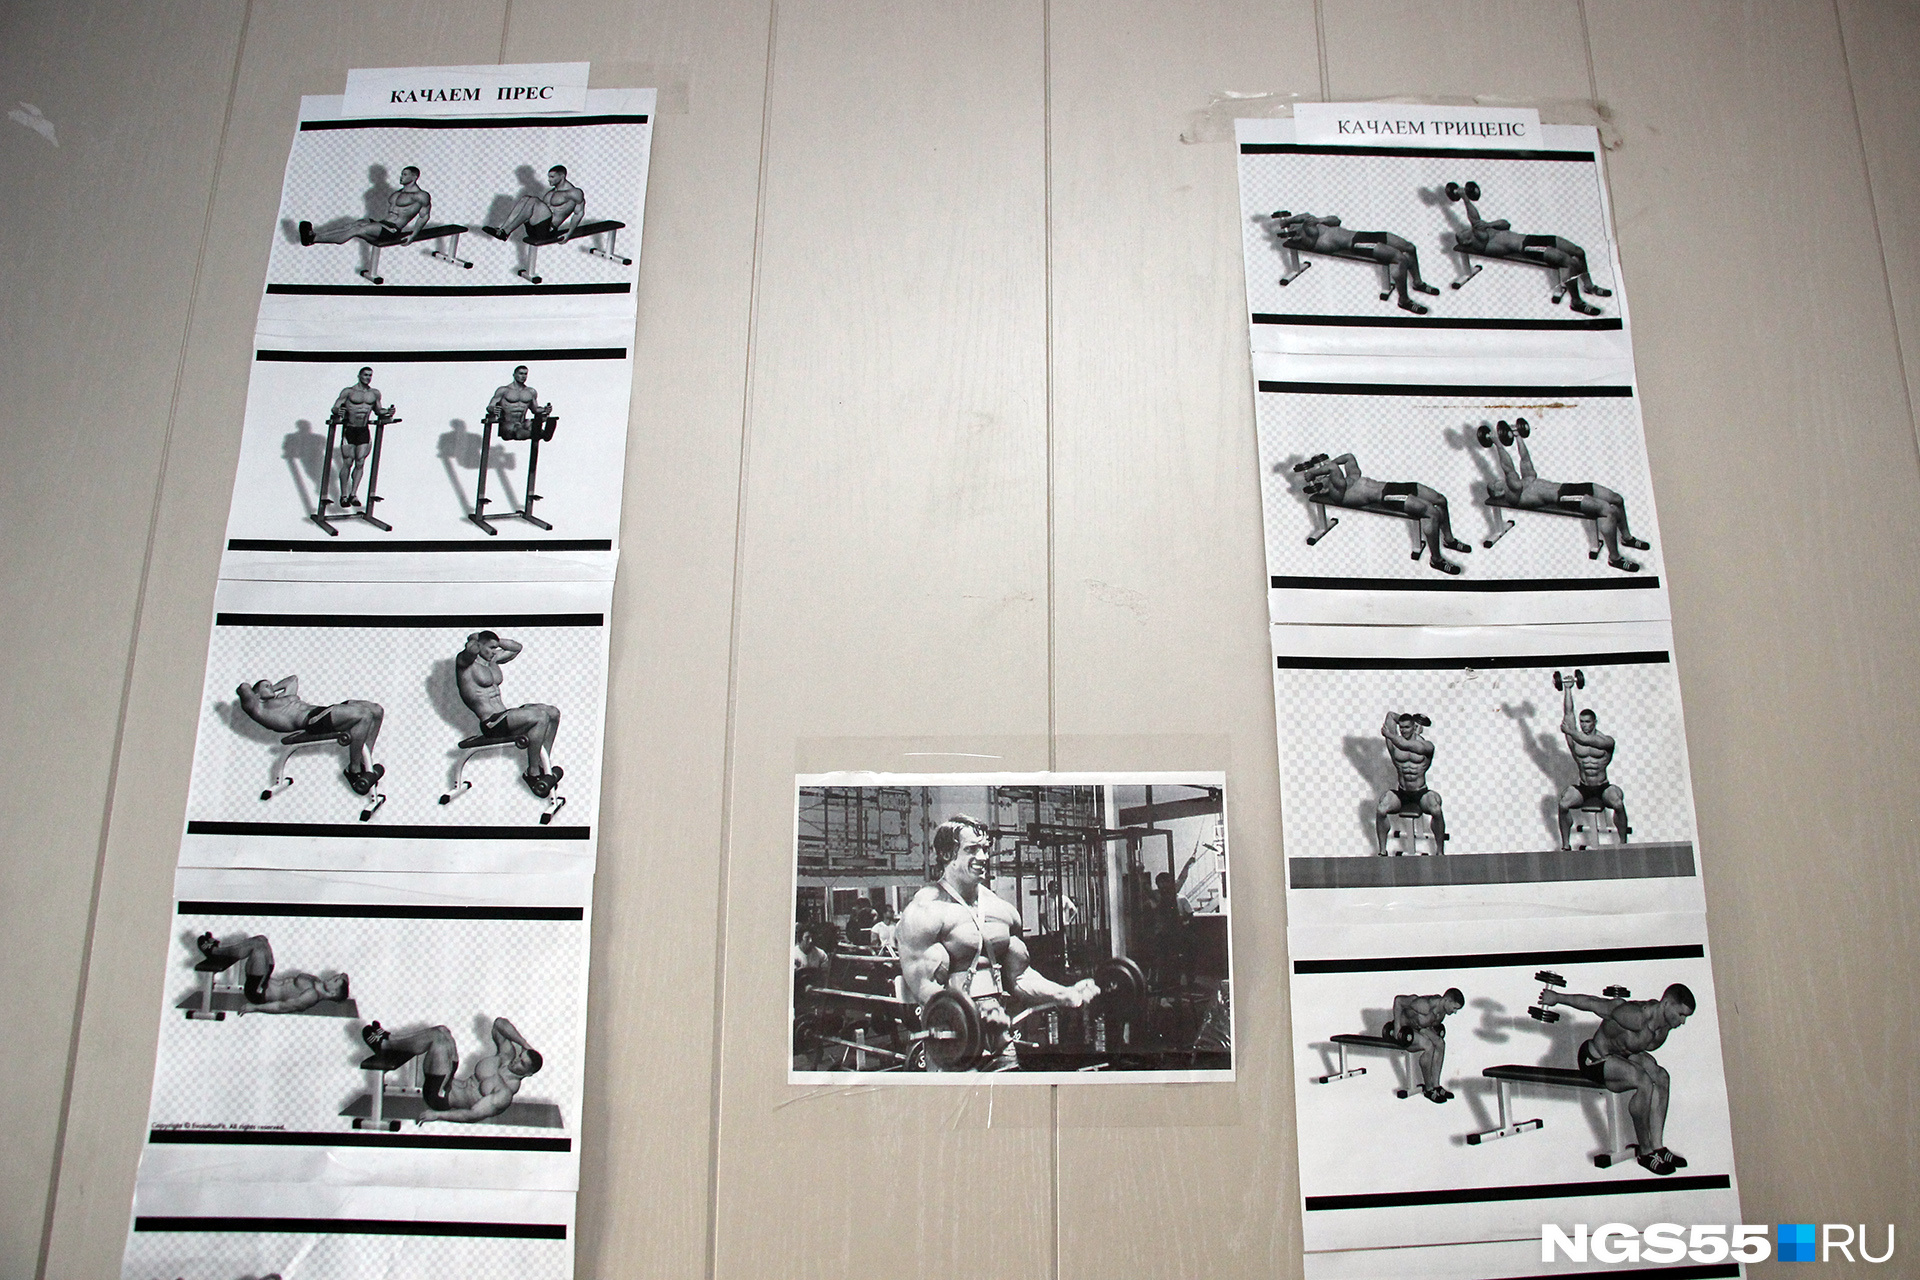 Фотографии Арнольда Шварценеггера висят в спортзале как ориентир, к которому стоит стремиться